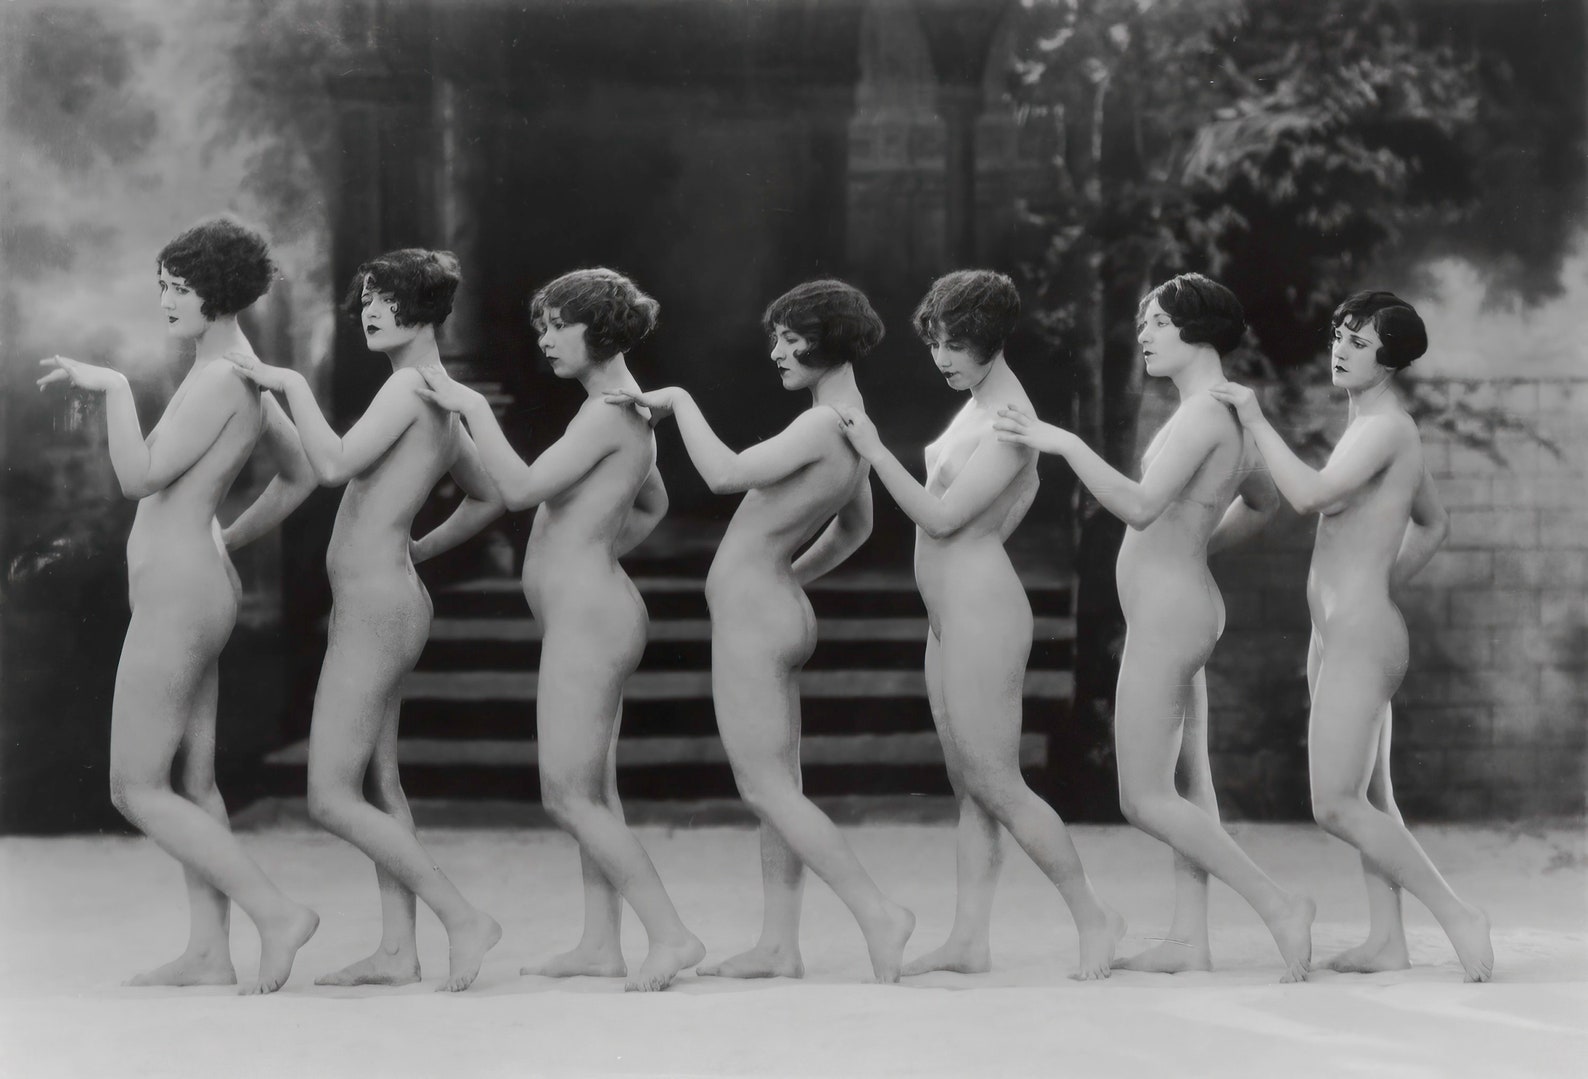 1920s nude women